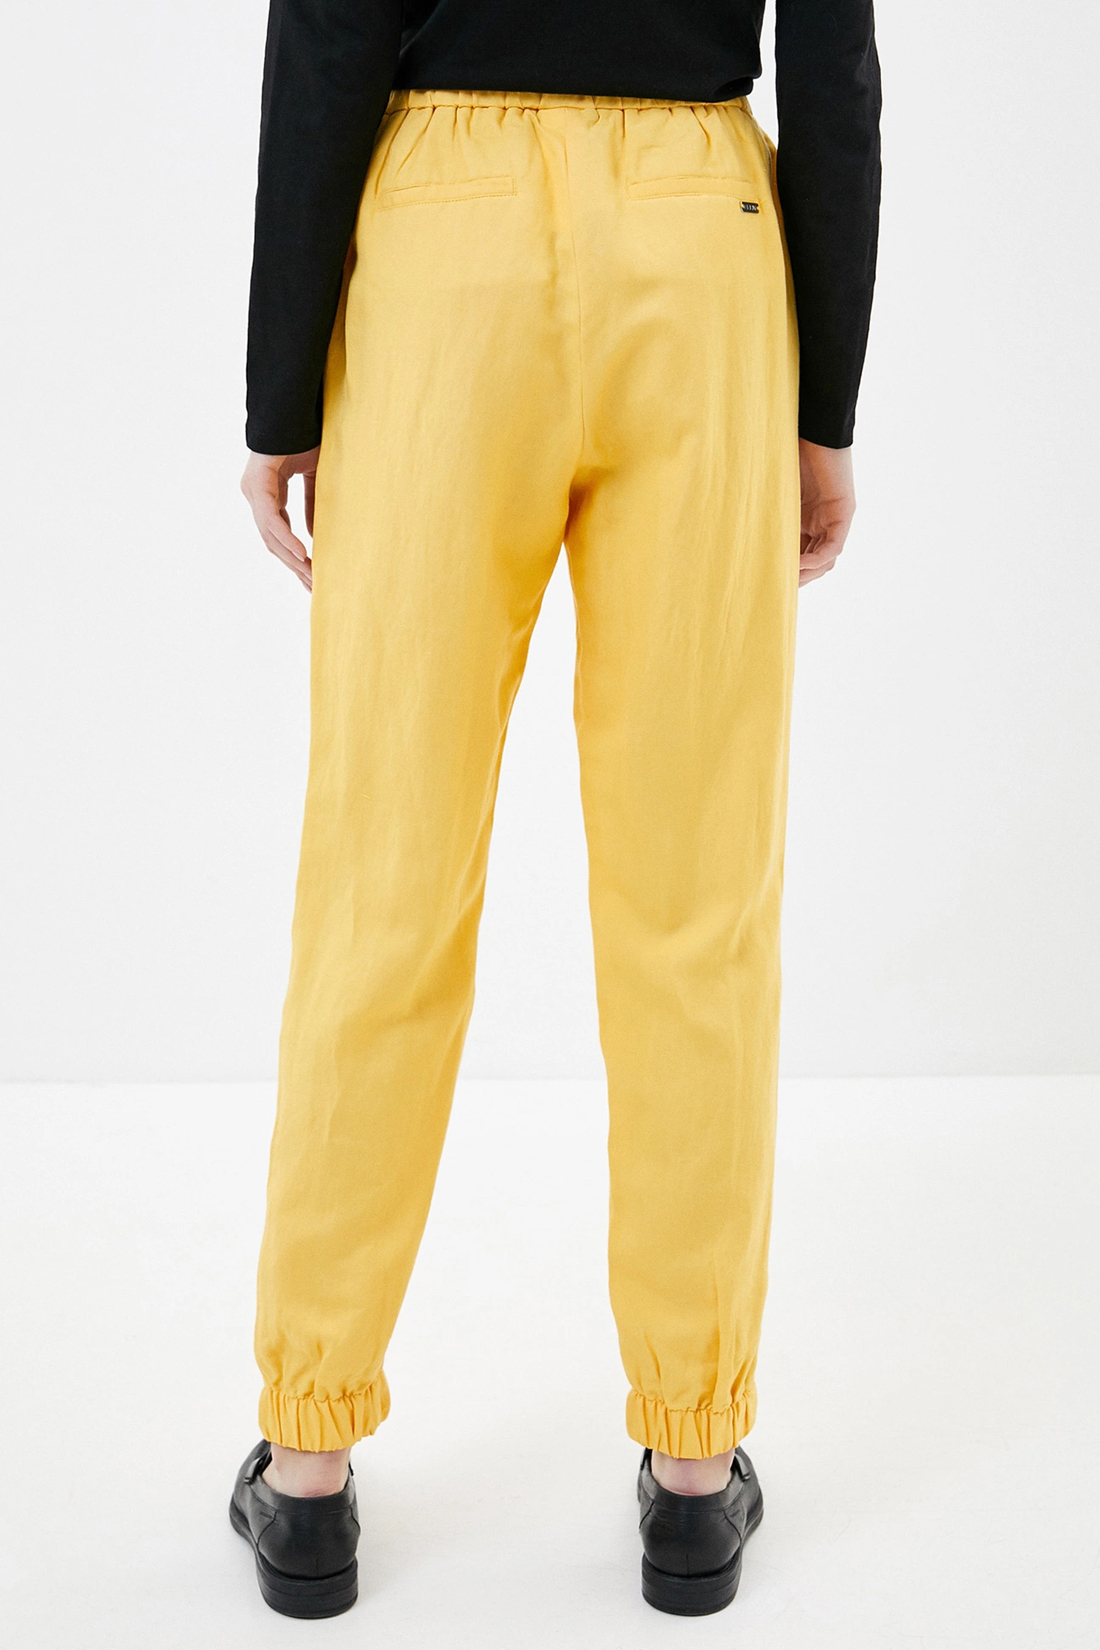 Спортивные брюки женские Baon B290048 желтые 3XL